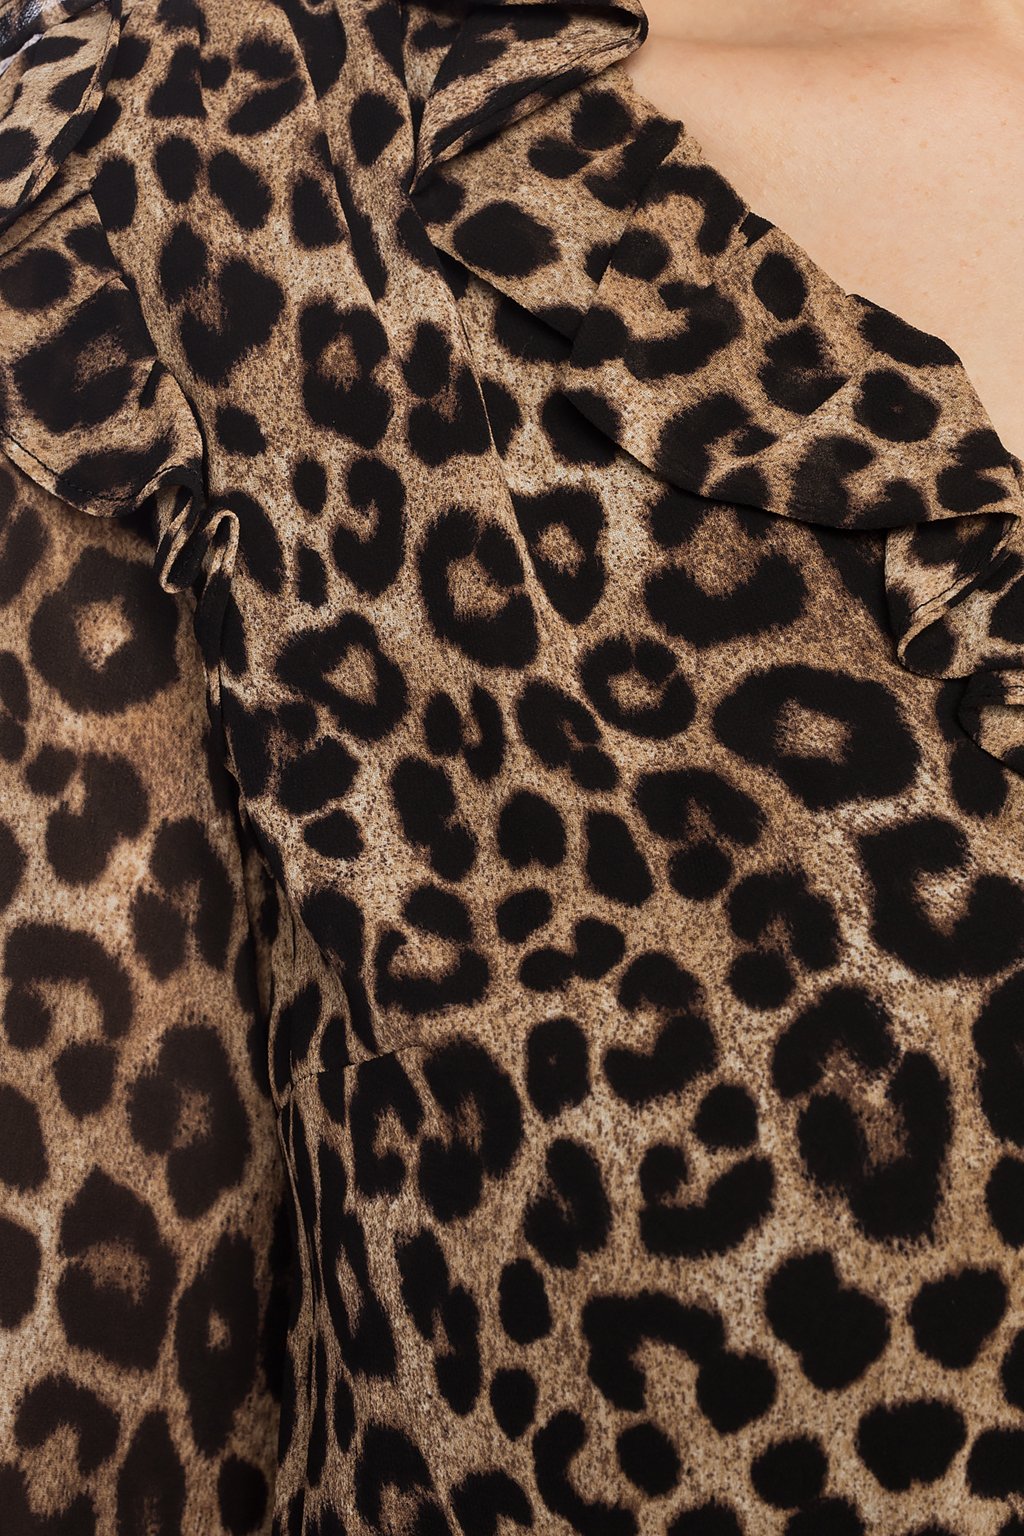 michael kors leopard jumpsuit